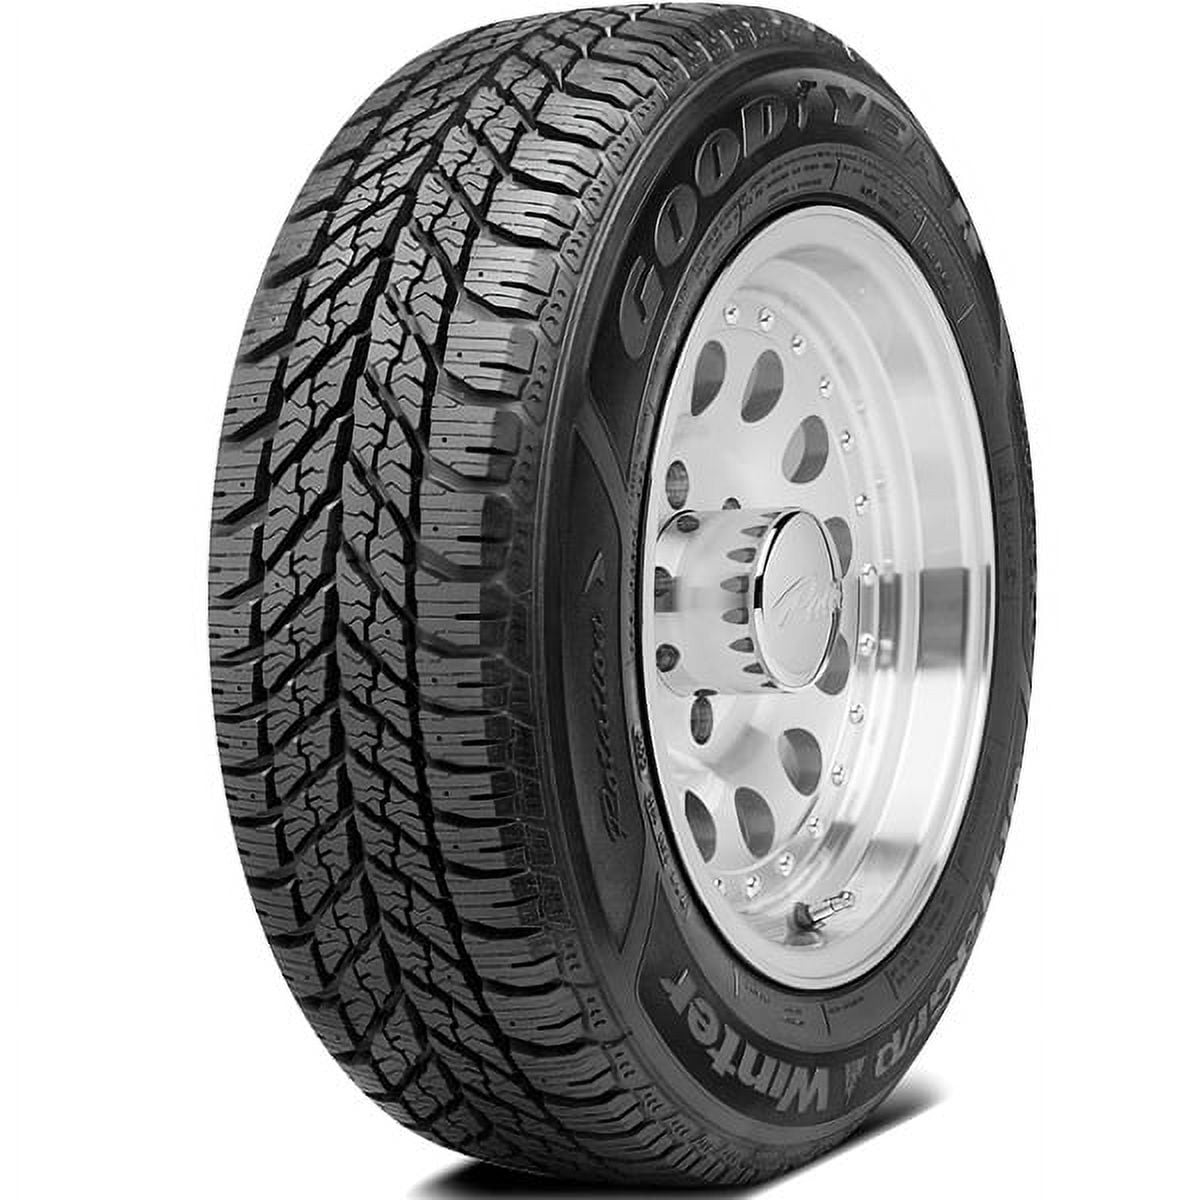 Goodyear Ultra Grip Winter Winter 205/65R15 94T Passenger Tire